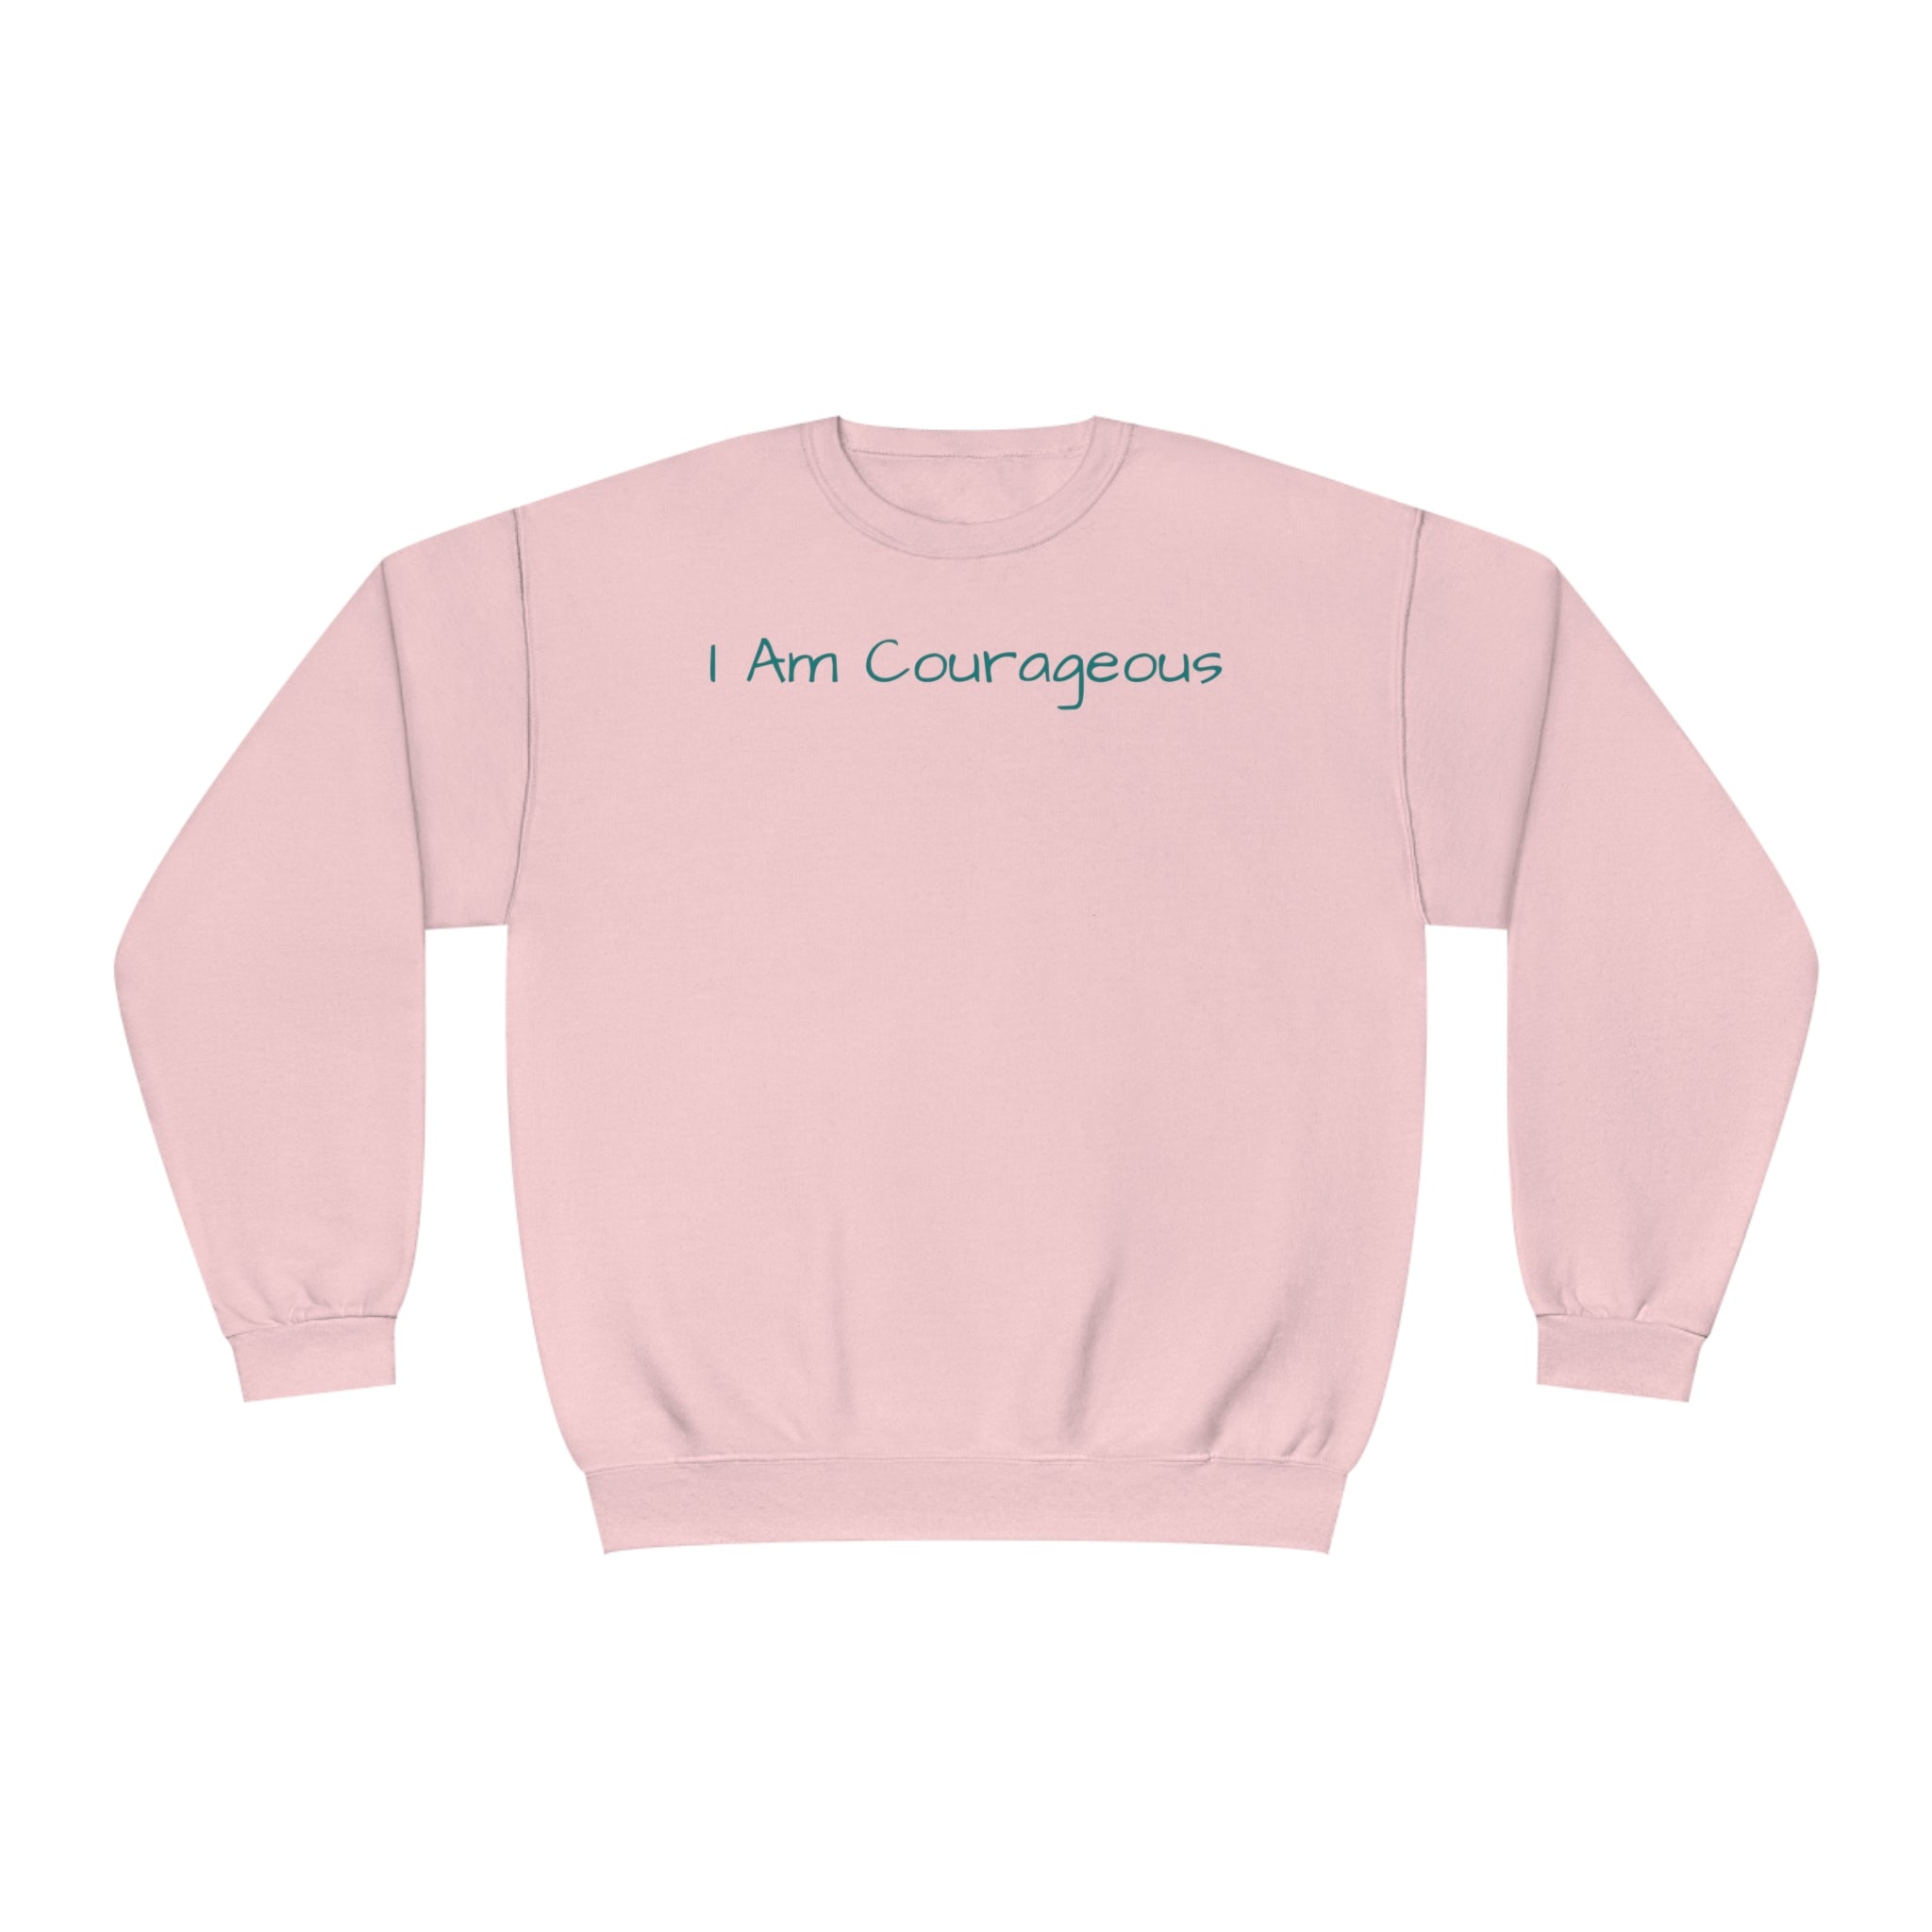 I Am Courageous Fleece: Comfort & Empowerment Sandstone Comfy Sweater Cozy Sweatshirt Crewneck Sweatshirt Fleece Pullover Graphic Sweatshirt Men's Sweatshirt Streatwear Sweatshirt Warm Outerwear Women's Sweatshirt Sweatshirt 1179733475032958410_2048 Printify